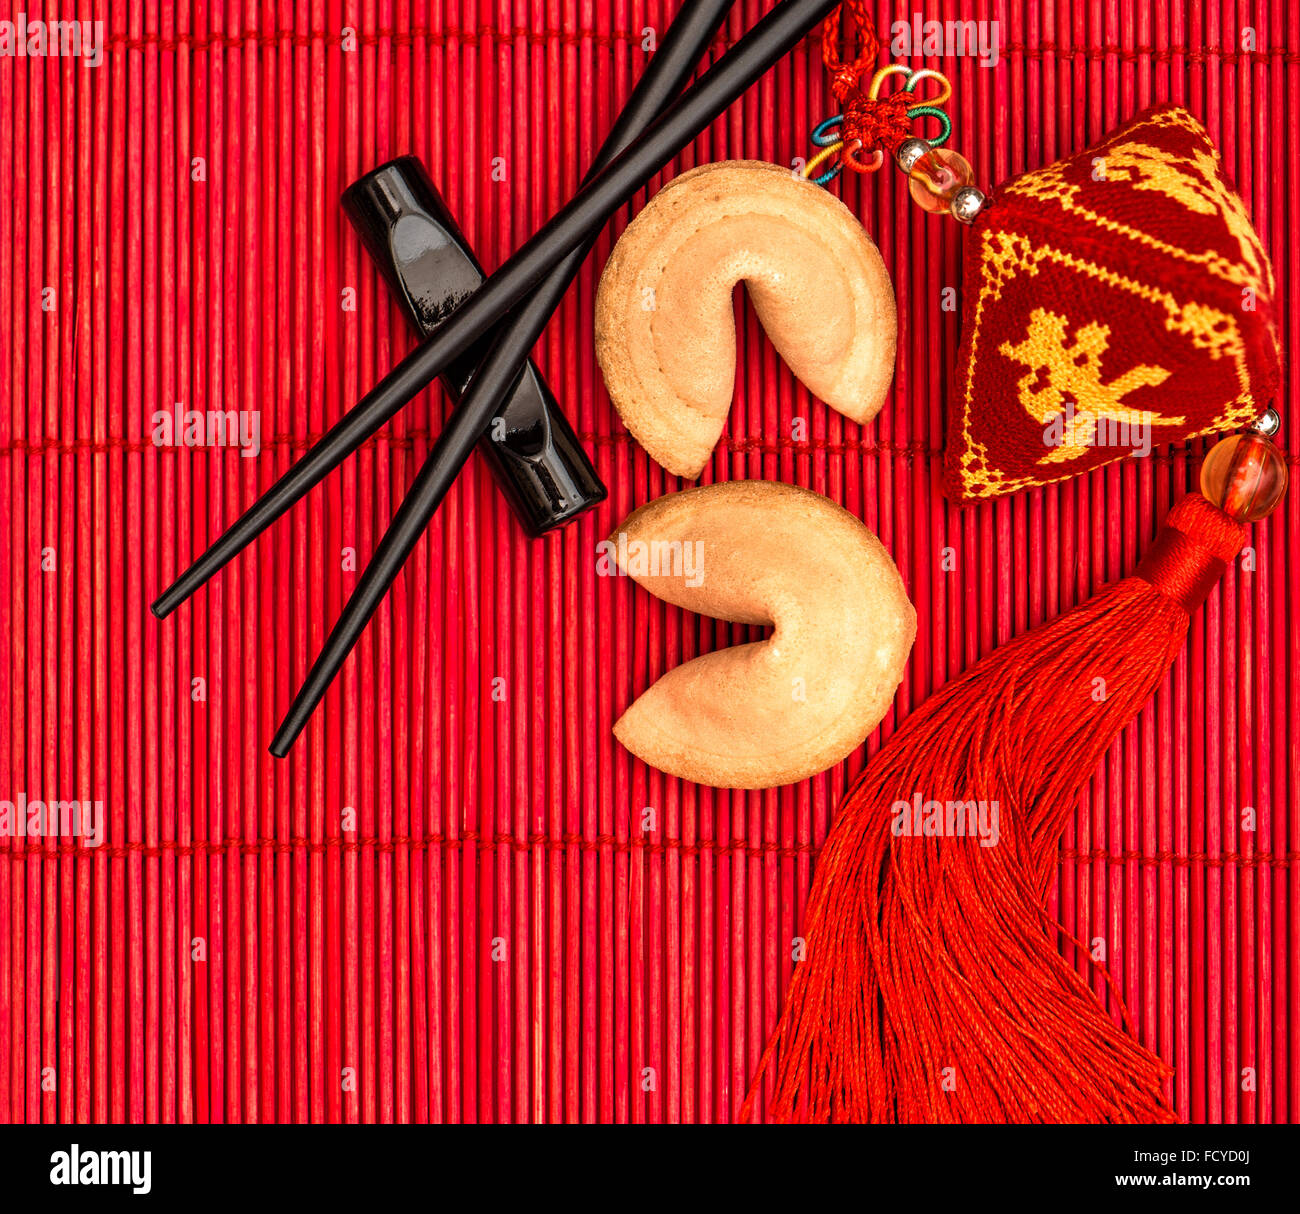 Año nuevo chino amuleto de la suerte, galletas de la fortuna y palillos Foto de stock